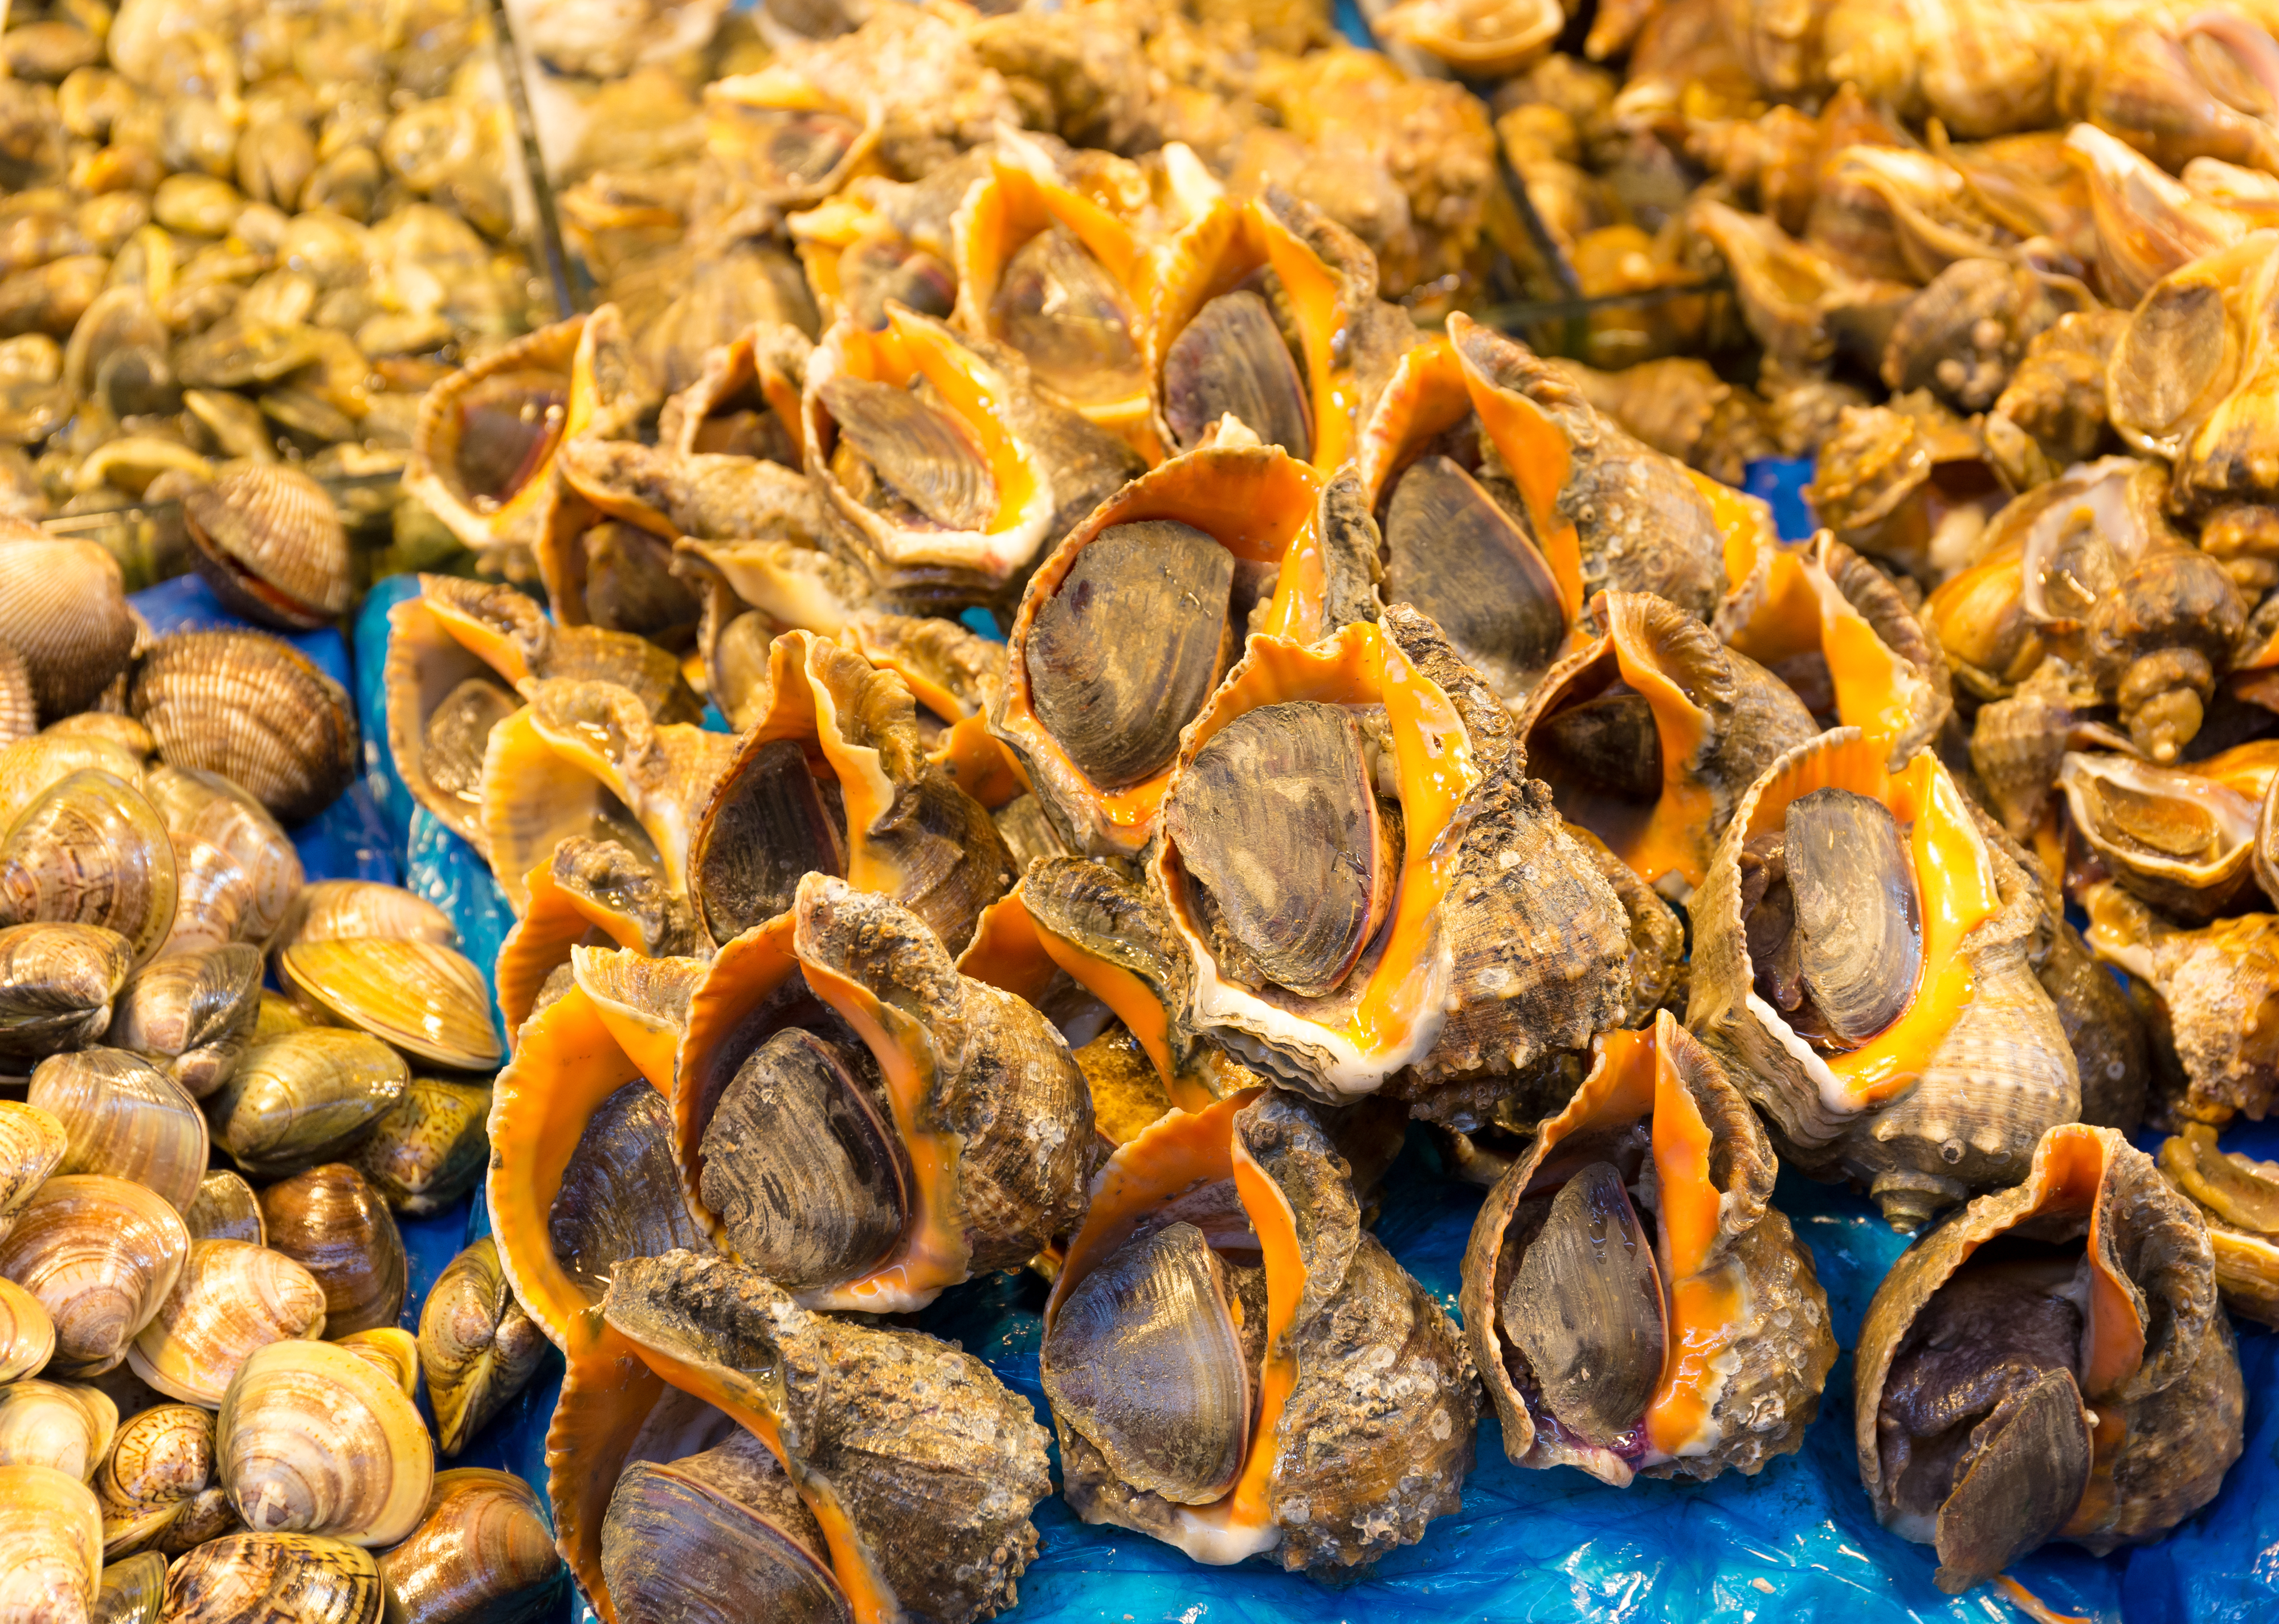 أفضل مناطق سياحية لمحبي الاكل 2021  Seafood-in-food-market-av5azpu